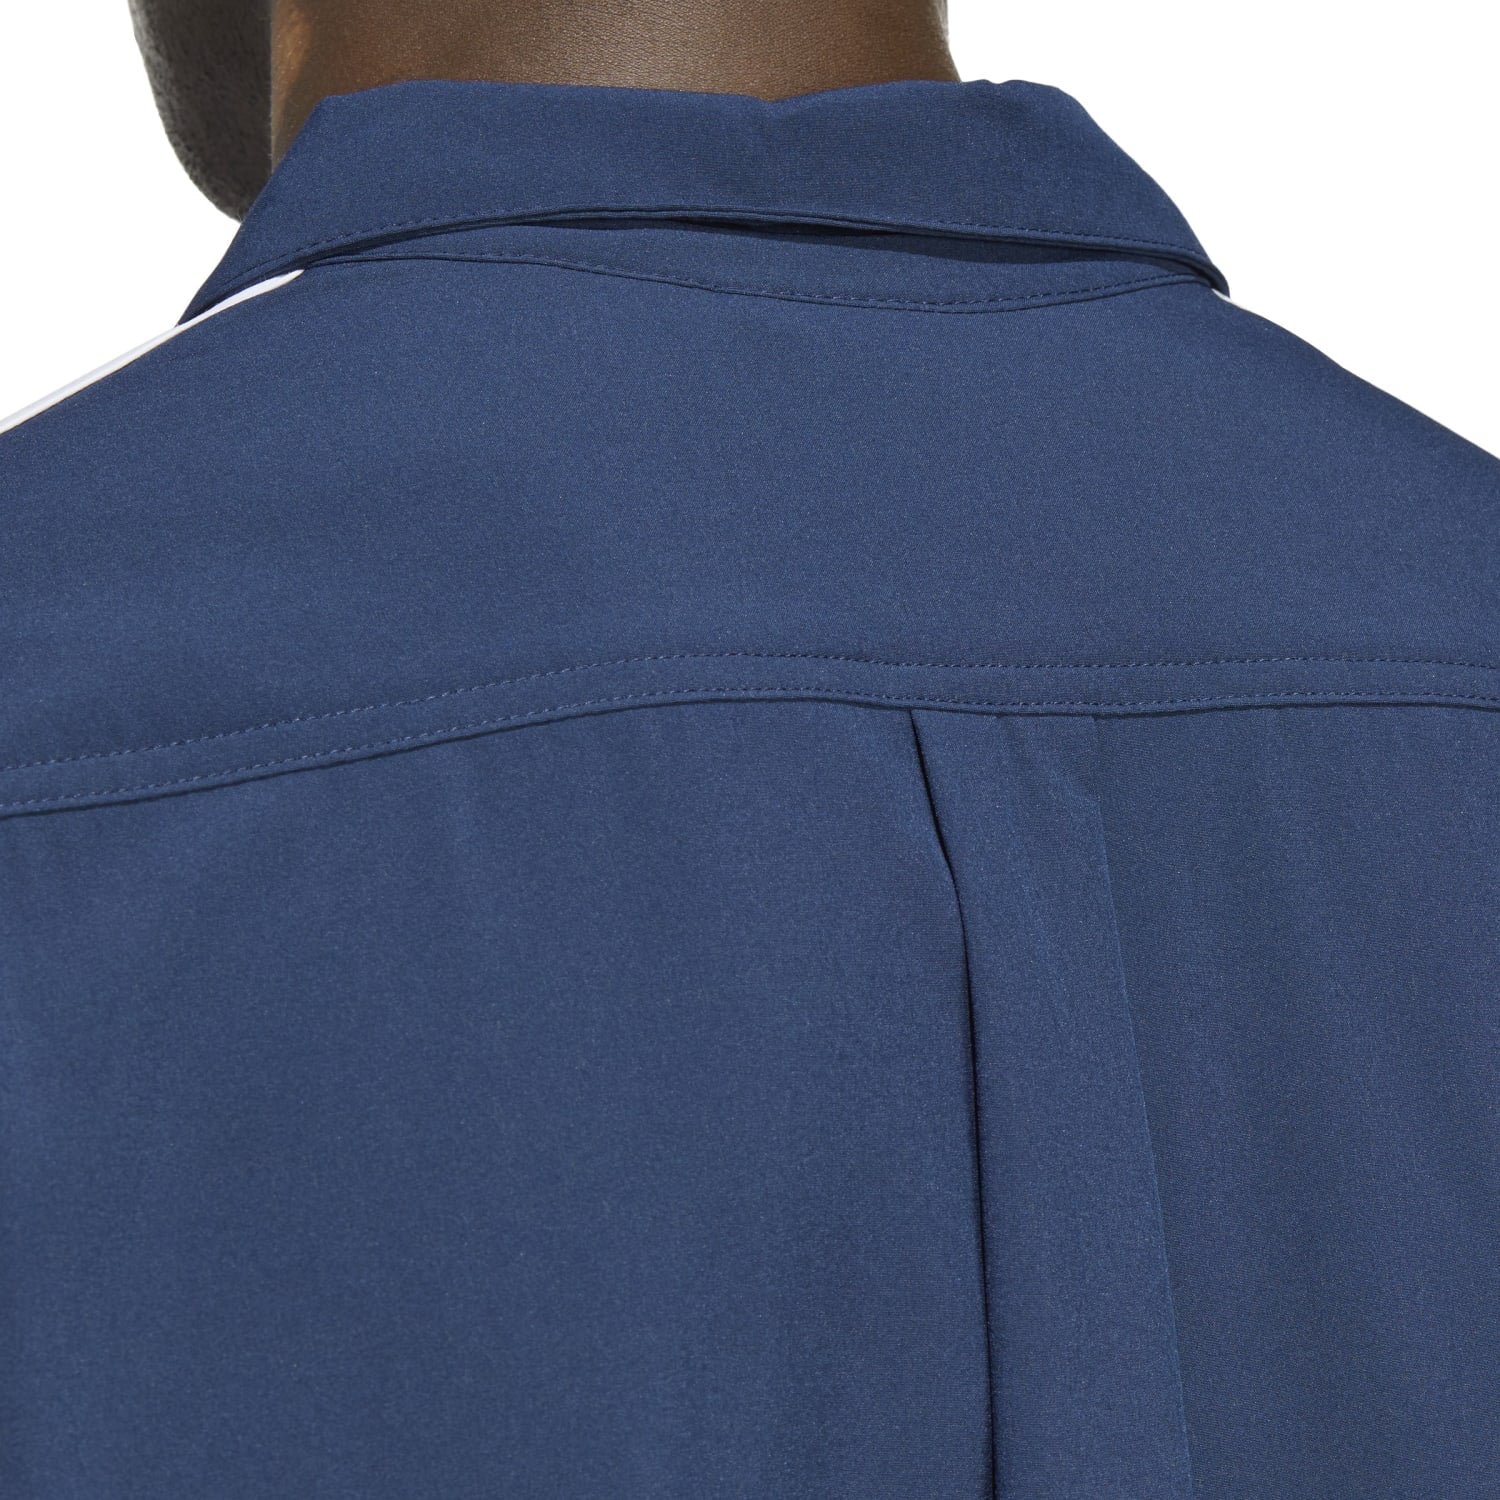 Adidas Originals Men Classics Shirt Blue IB9964 - TOPS - Canada